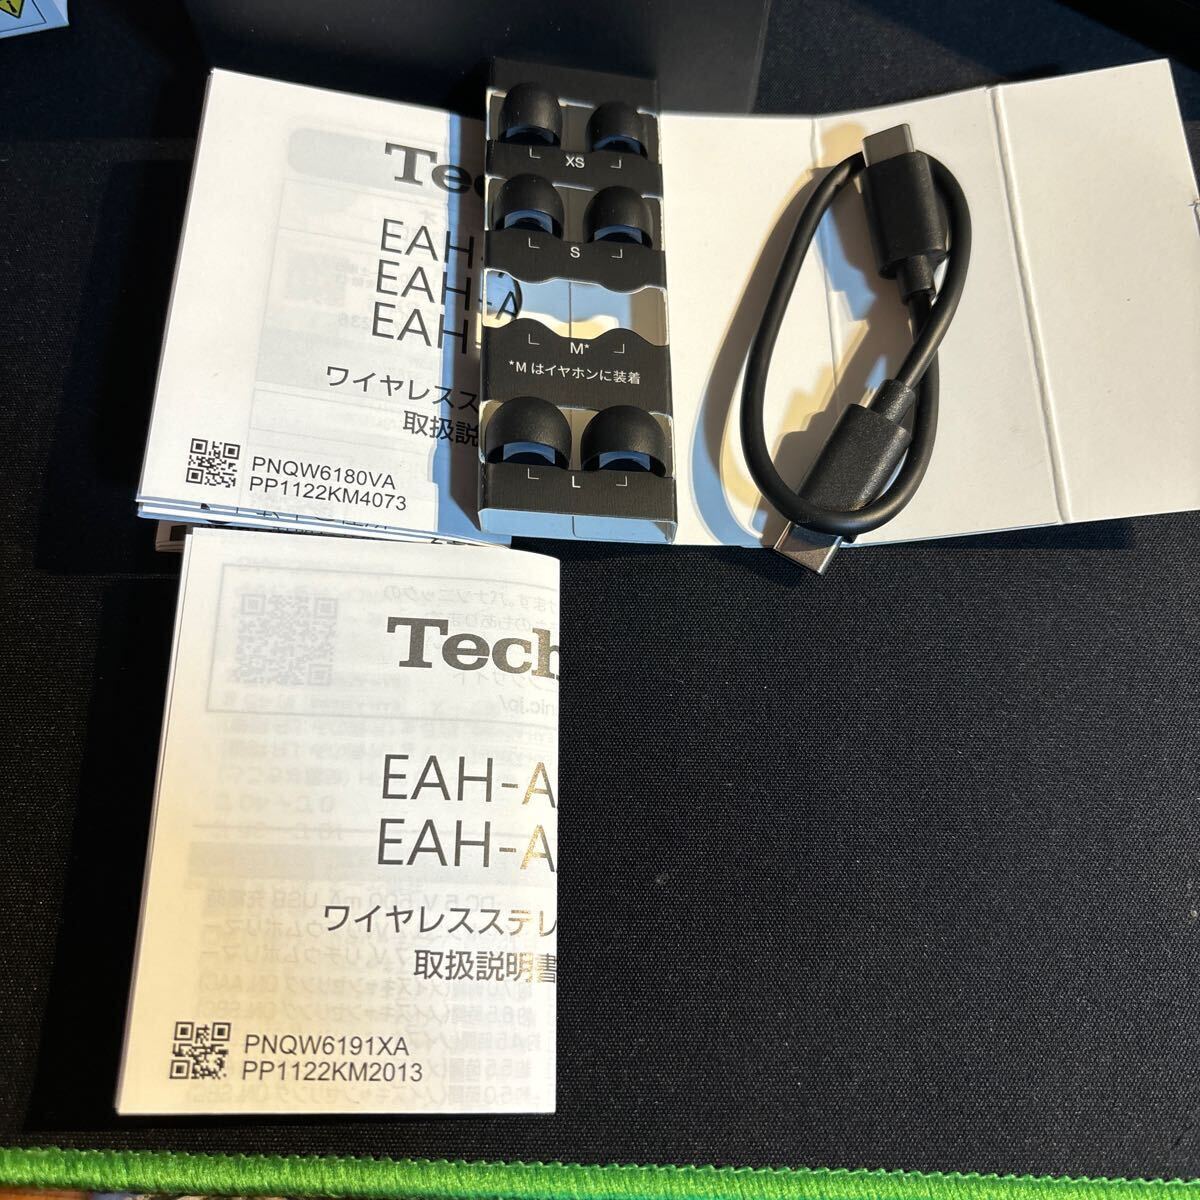 *Technics EAH-AZ40M2 черный превосходный товар совершенно беспроводной слуховай аппарат noi can в высоком разрешени соответствует Bluetooth5.3 LDAC AAC Technics 